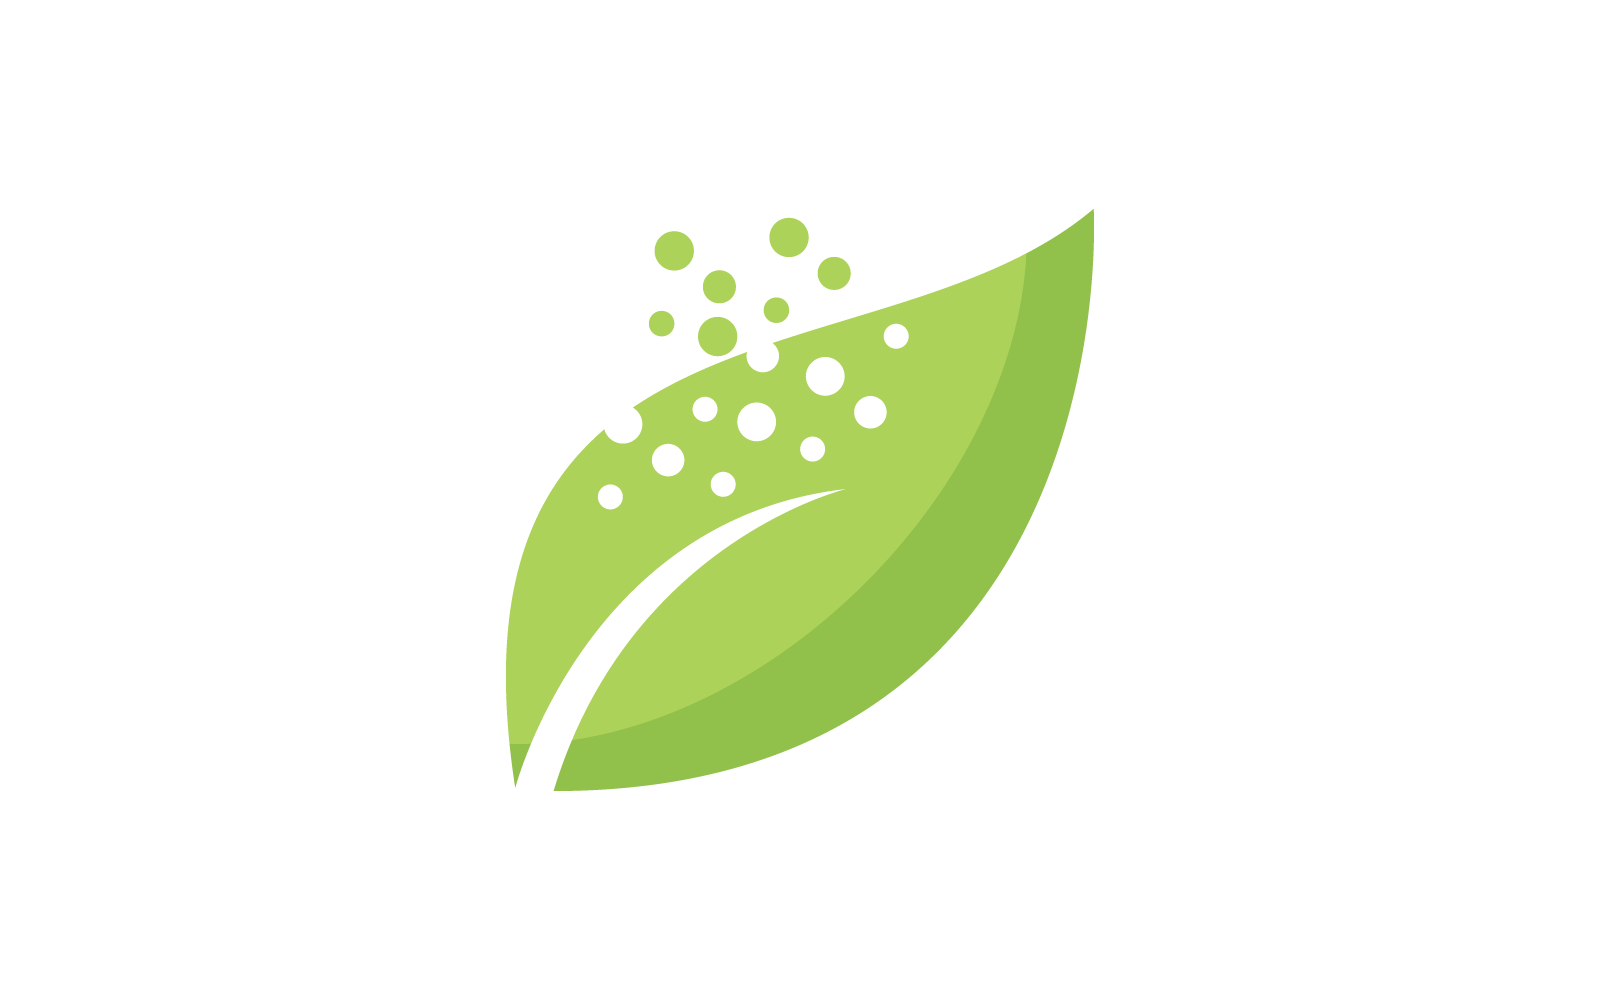 Eco care logo green leaf illustration flat design